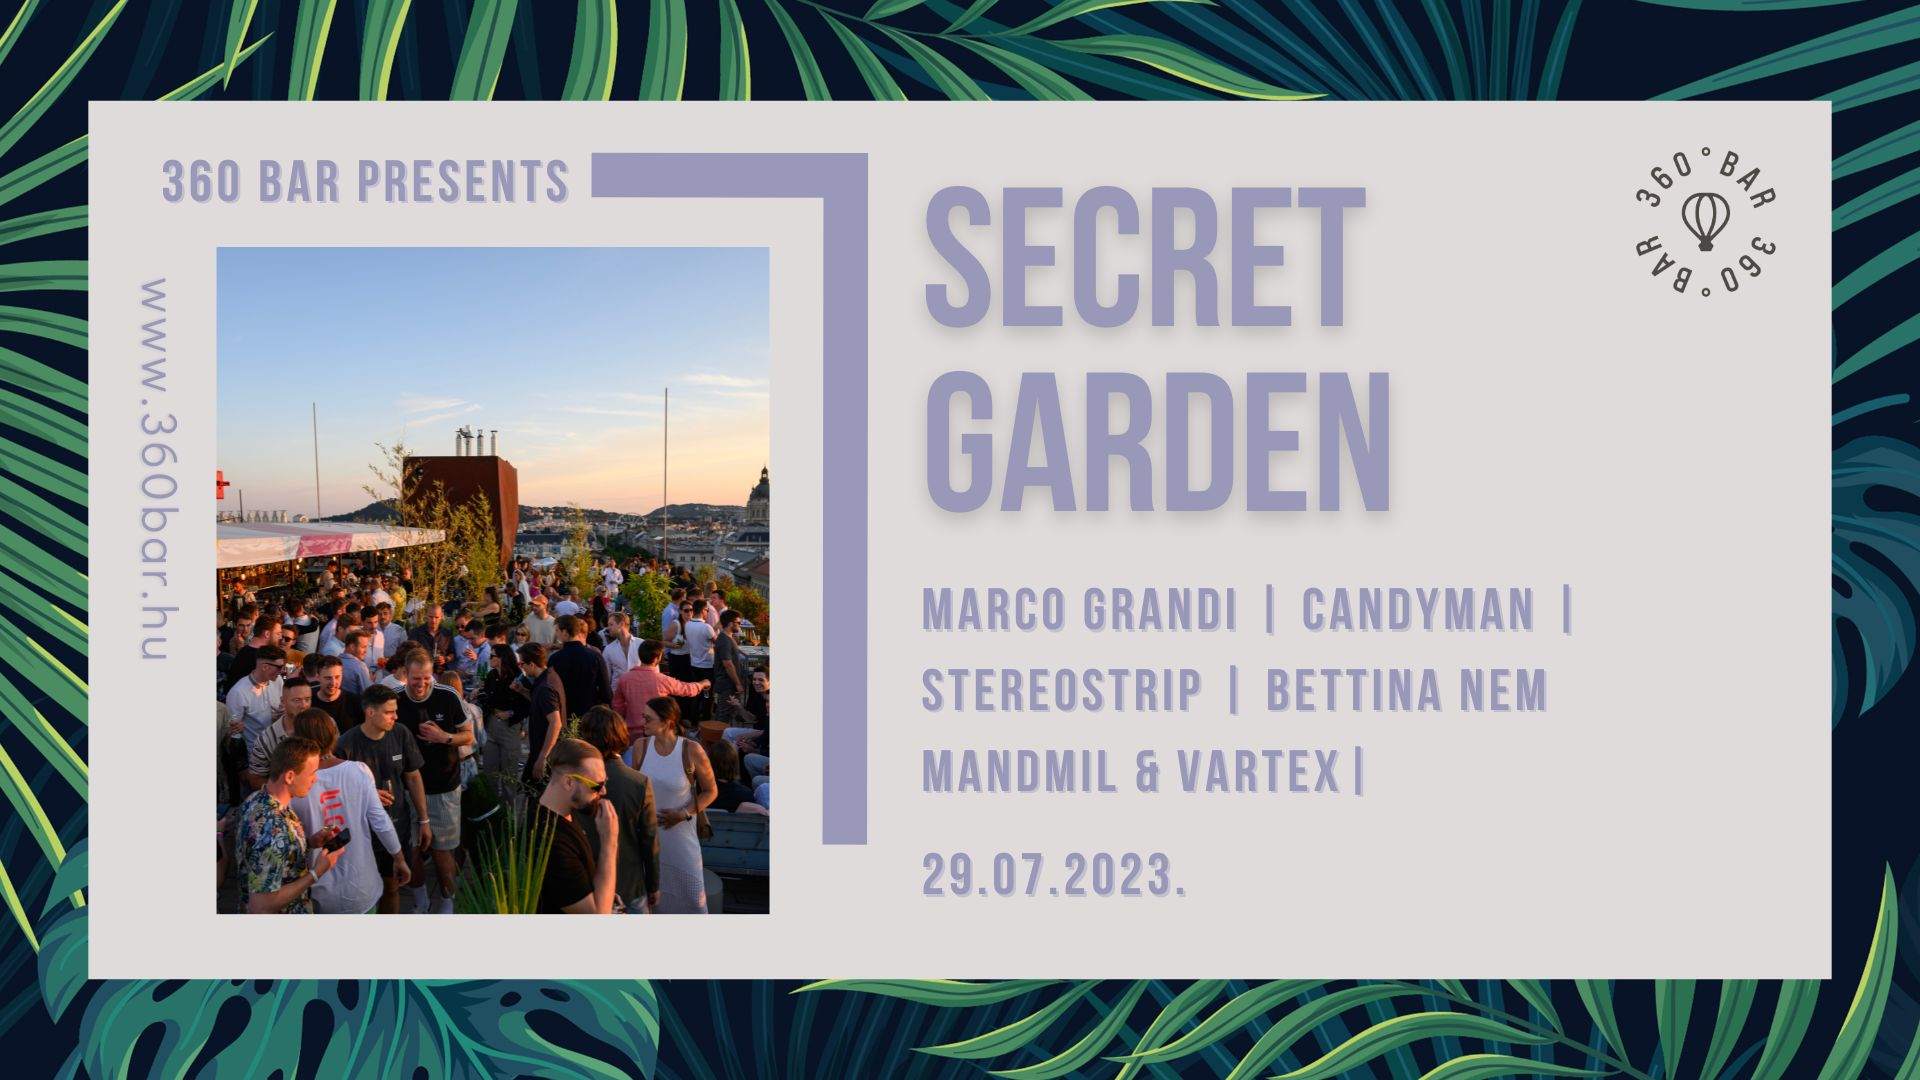 Why we love a secret garden